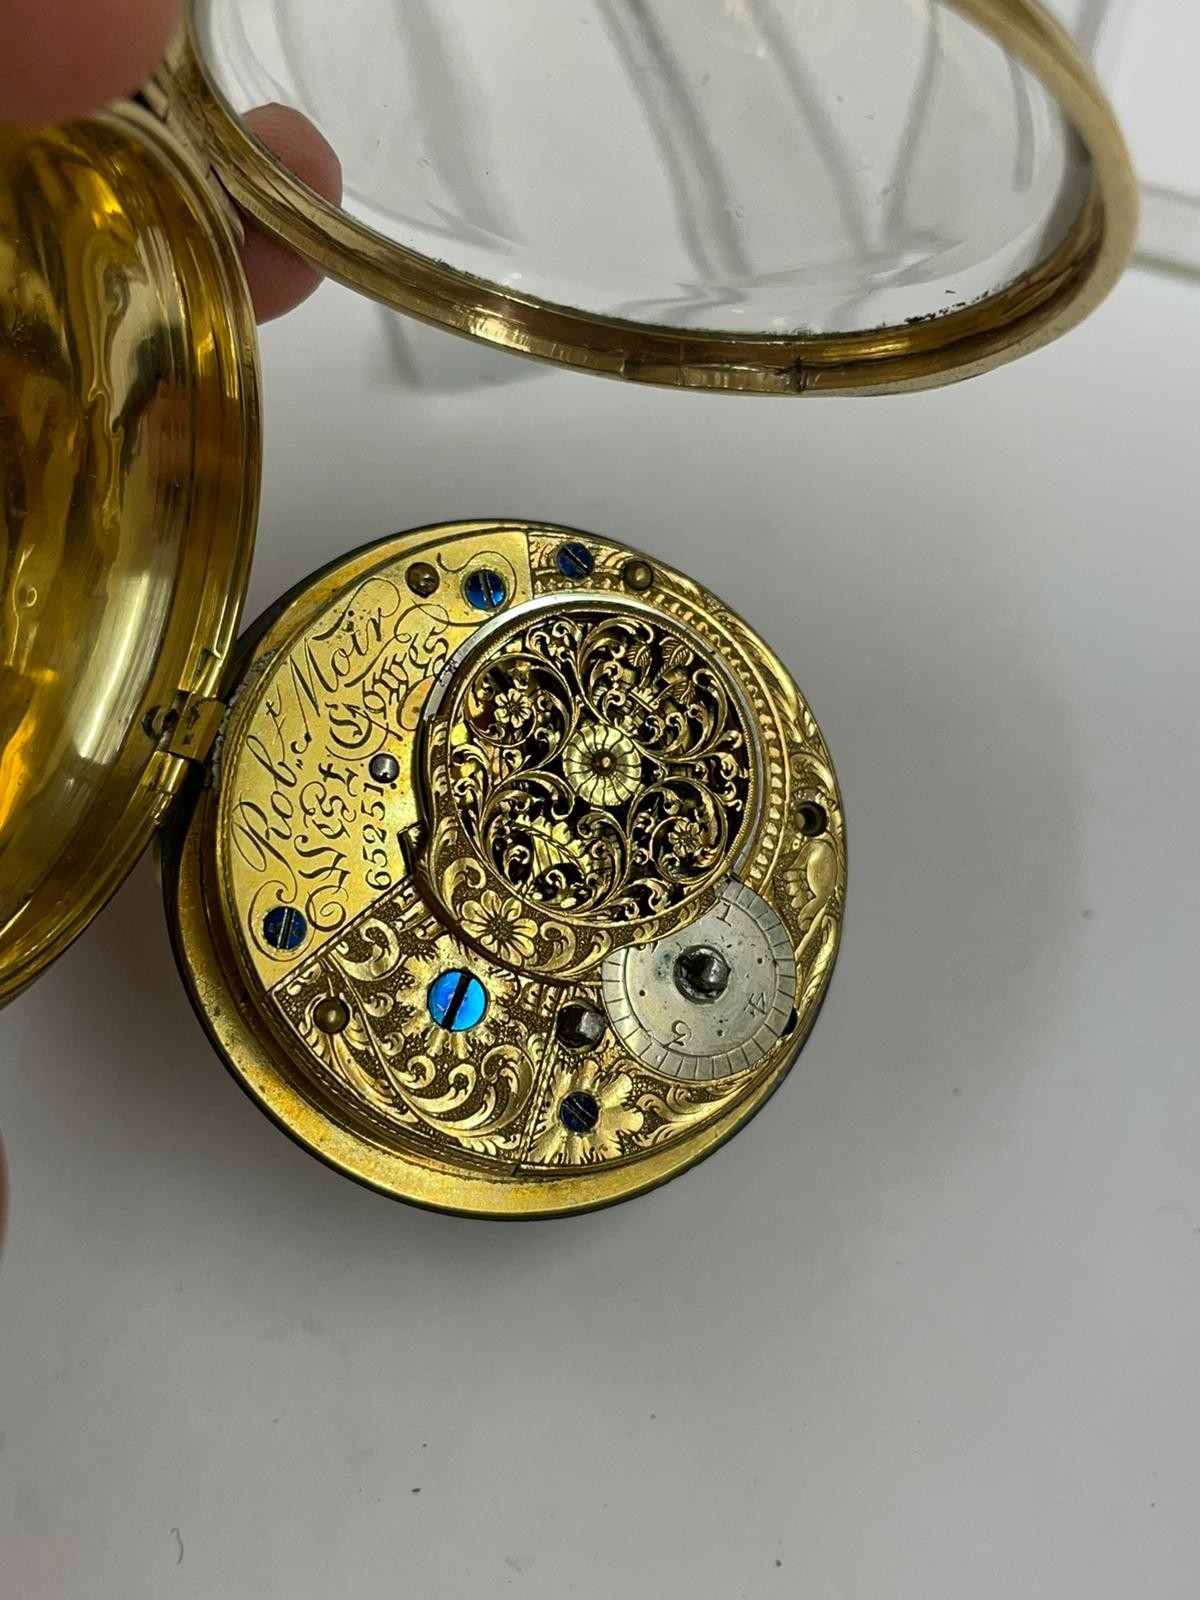 Antique gilt silver verge fusee pocket watch x2 AF no keys x1 ticks of shaken - Image 5 of 5